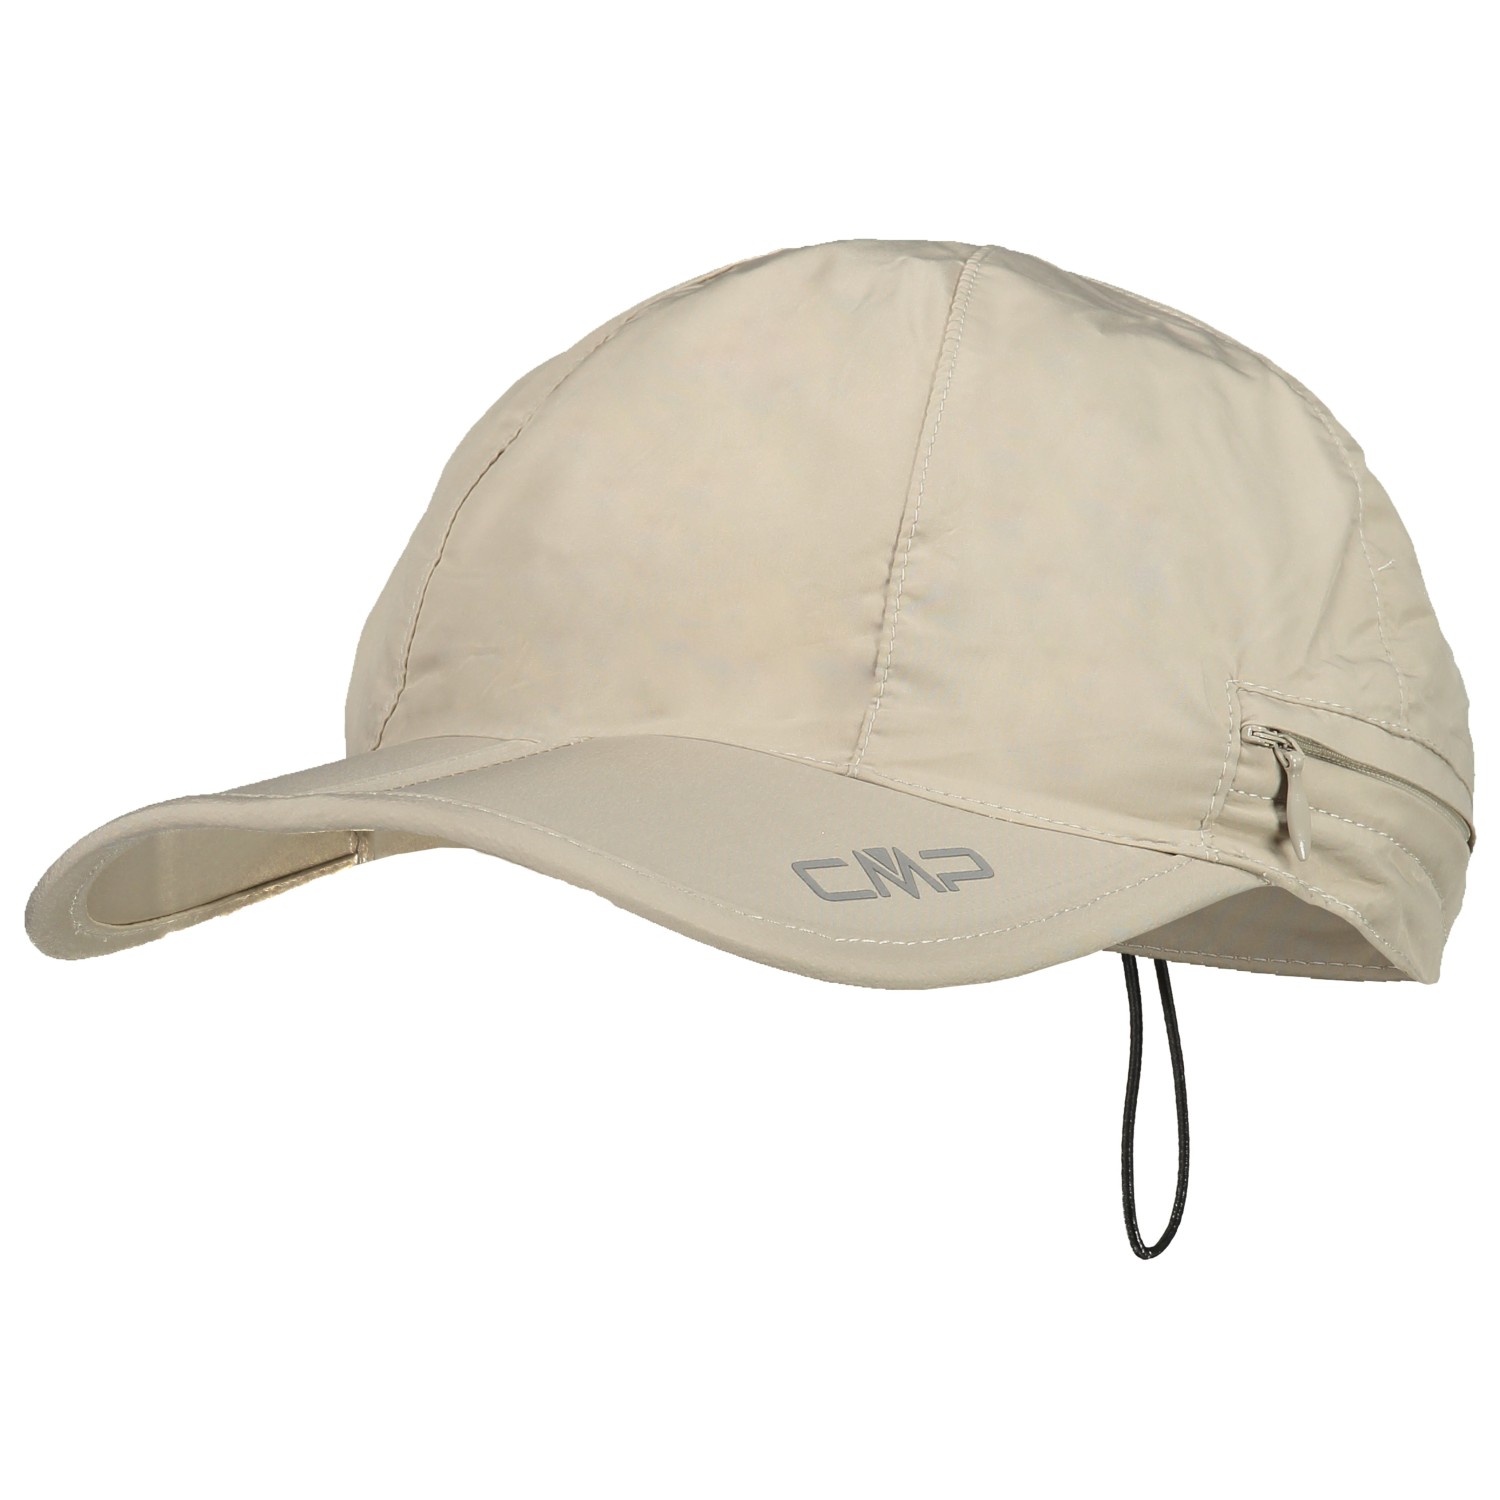 Кепка Cmp Women's Hat with Neck Protection, цвет Arena